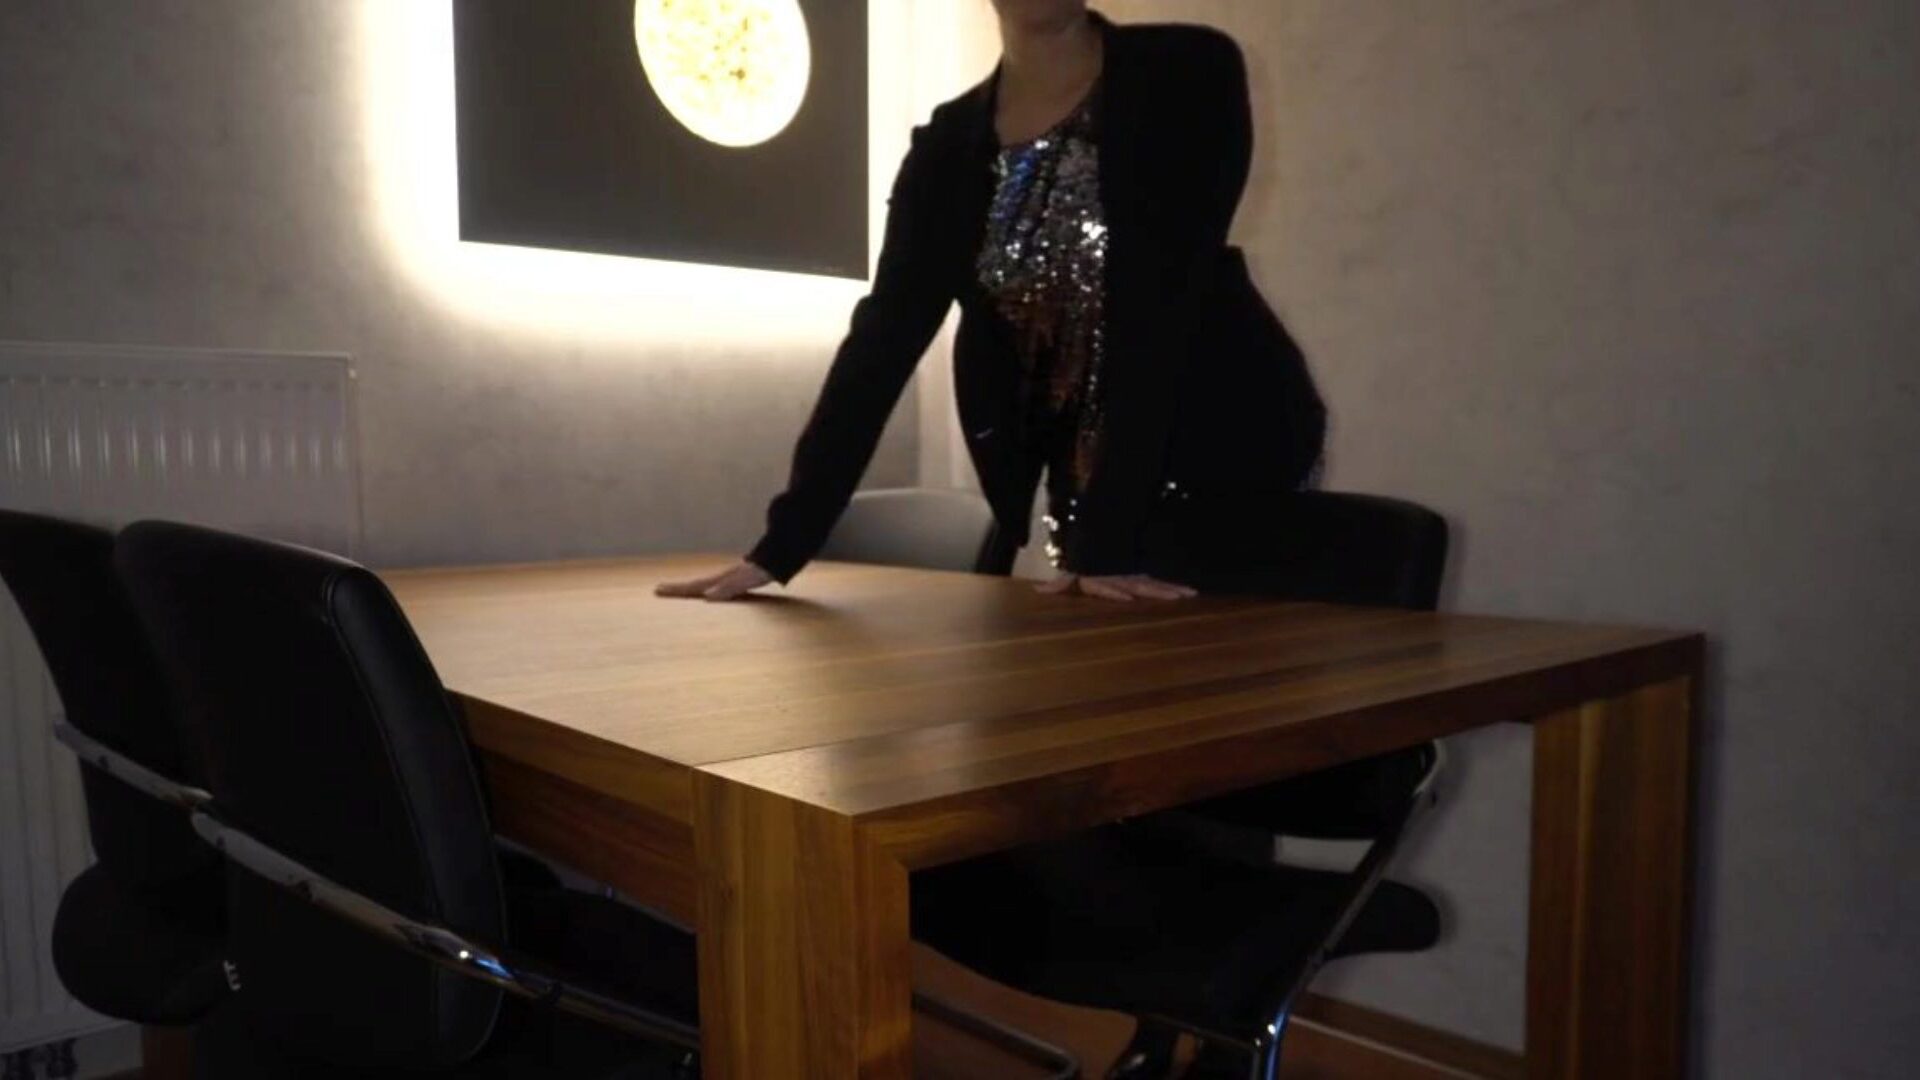 le patron baise la secrétaire analement sur la table ... regardez le patron baise la secrétaire analement sur la table